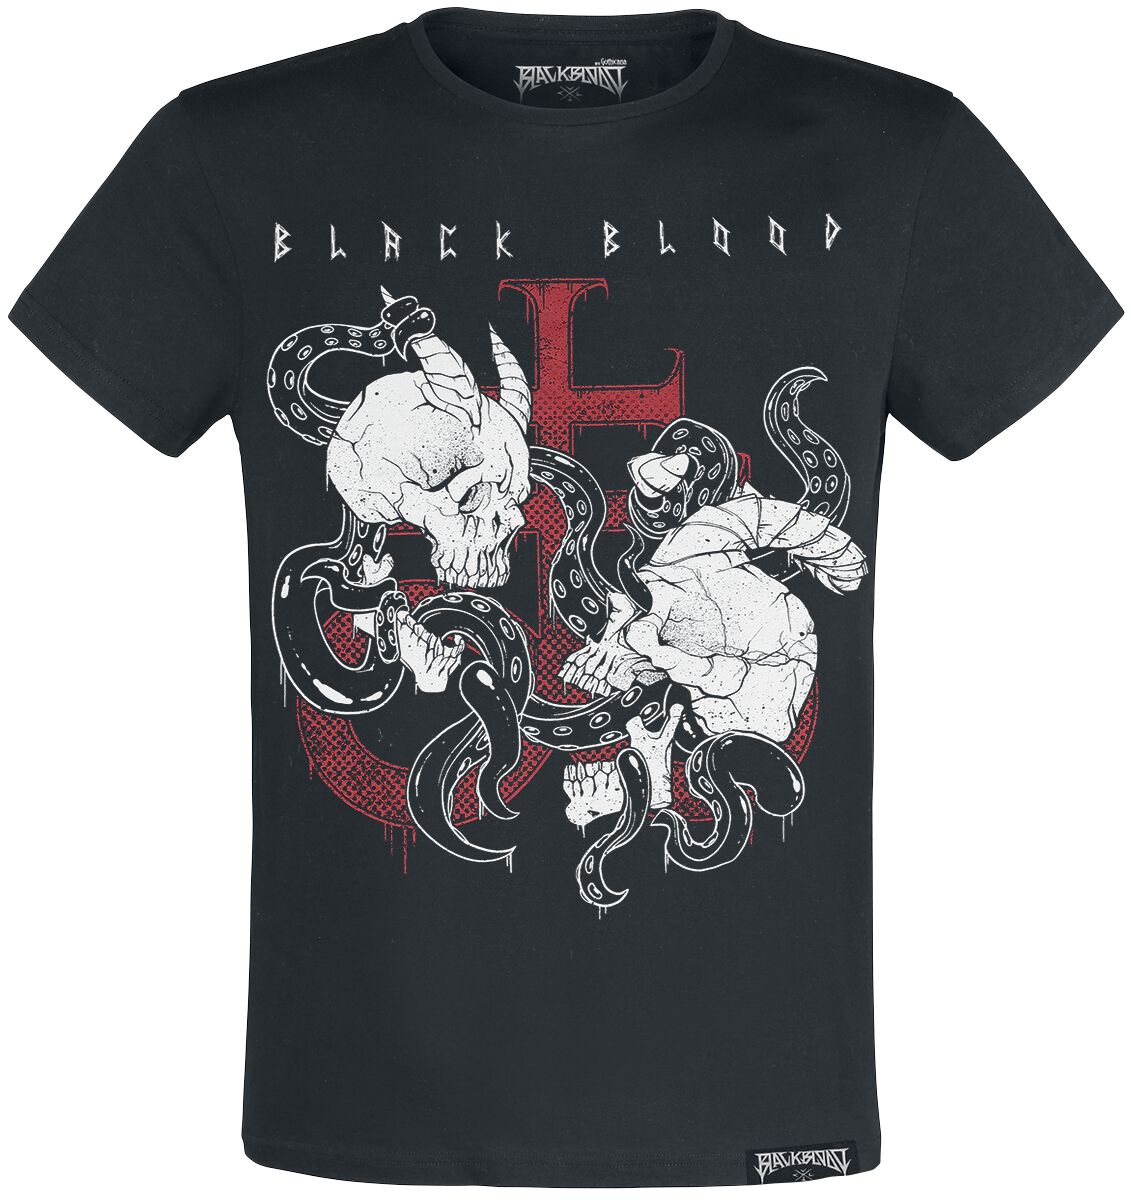 Black Blood by Gothicana T-Shirt - T-Shirt with Demon Skull Print - S bis XL - für Männer - Größe XL - schwarz